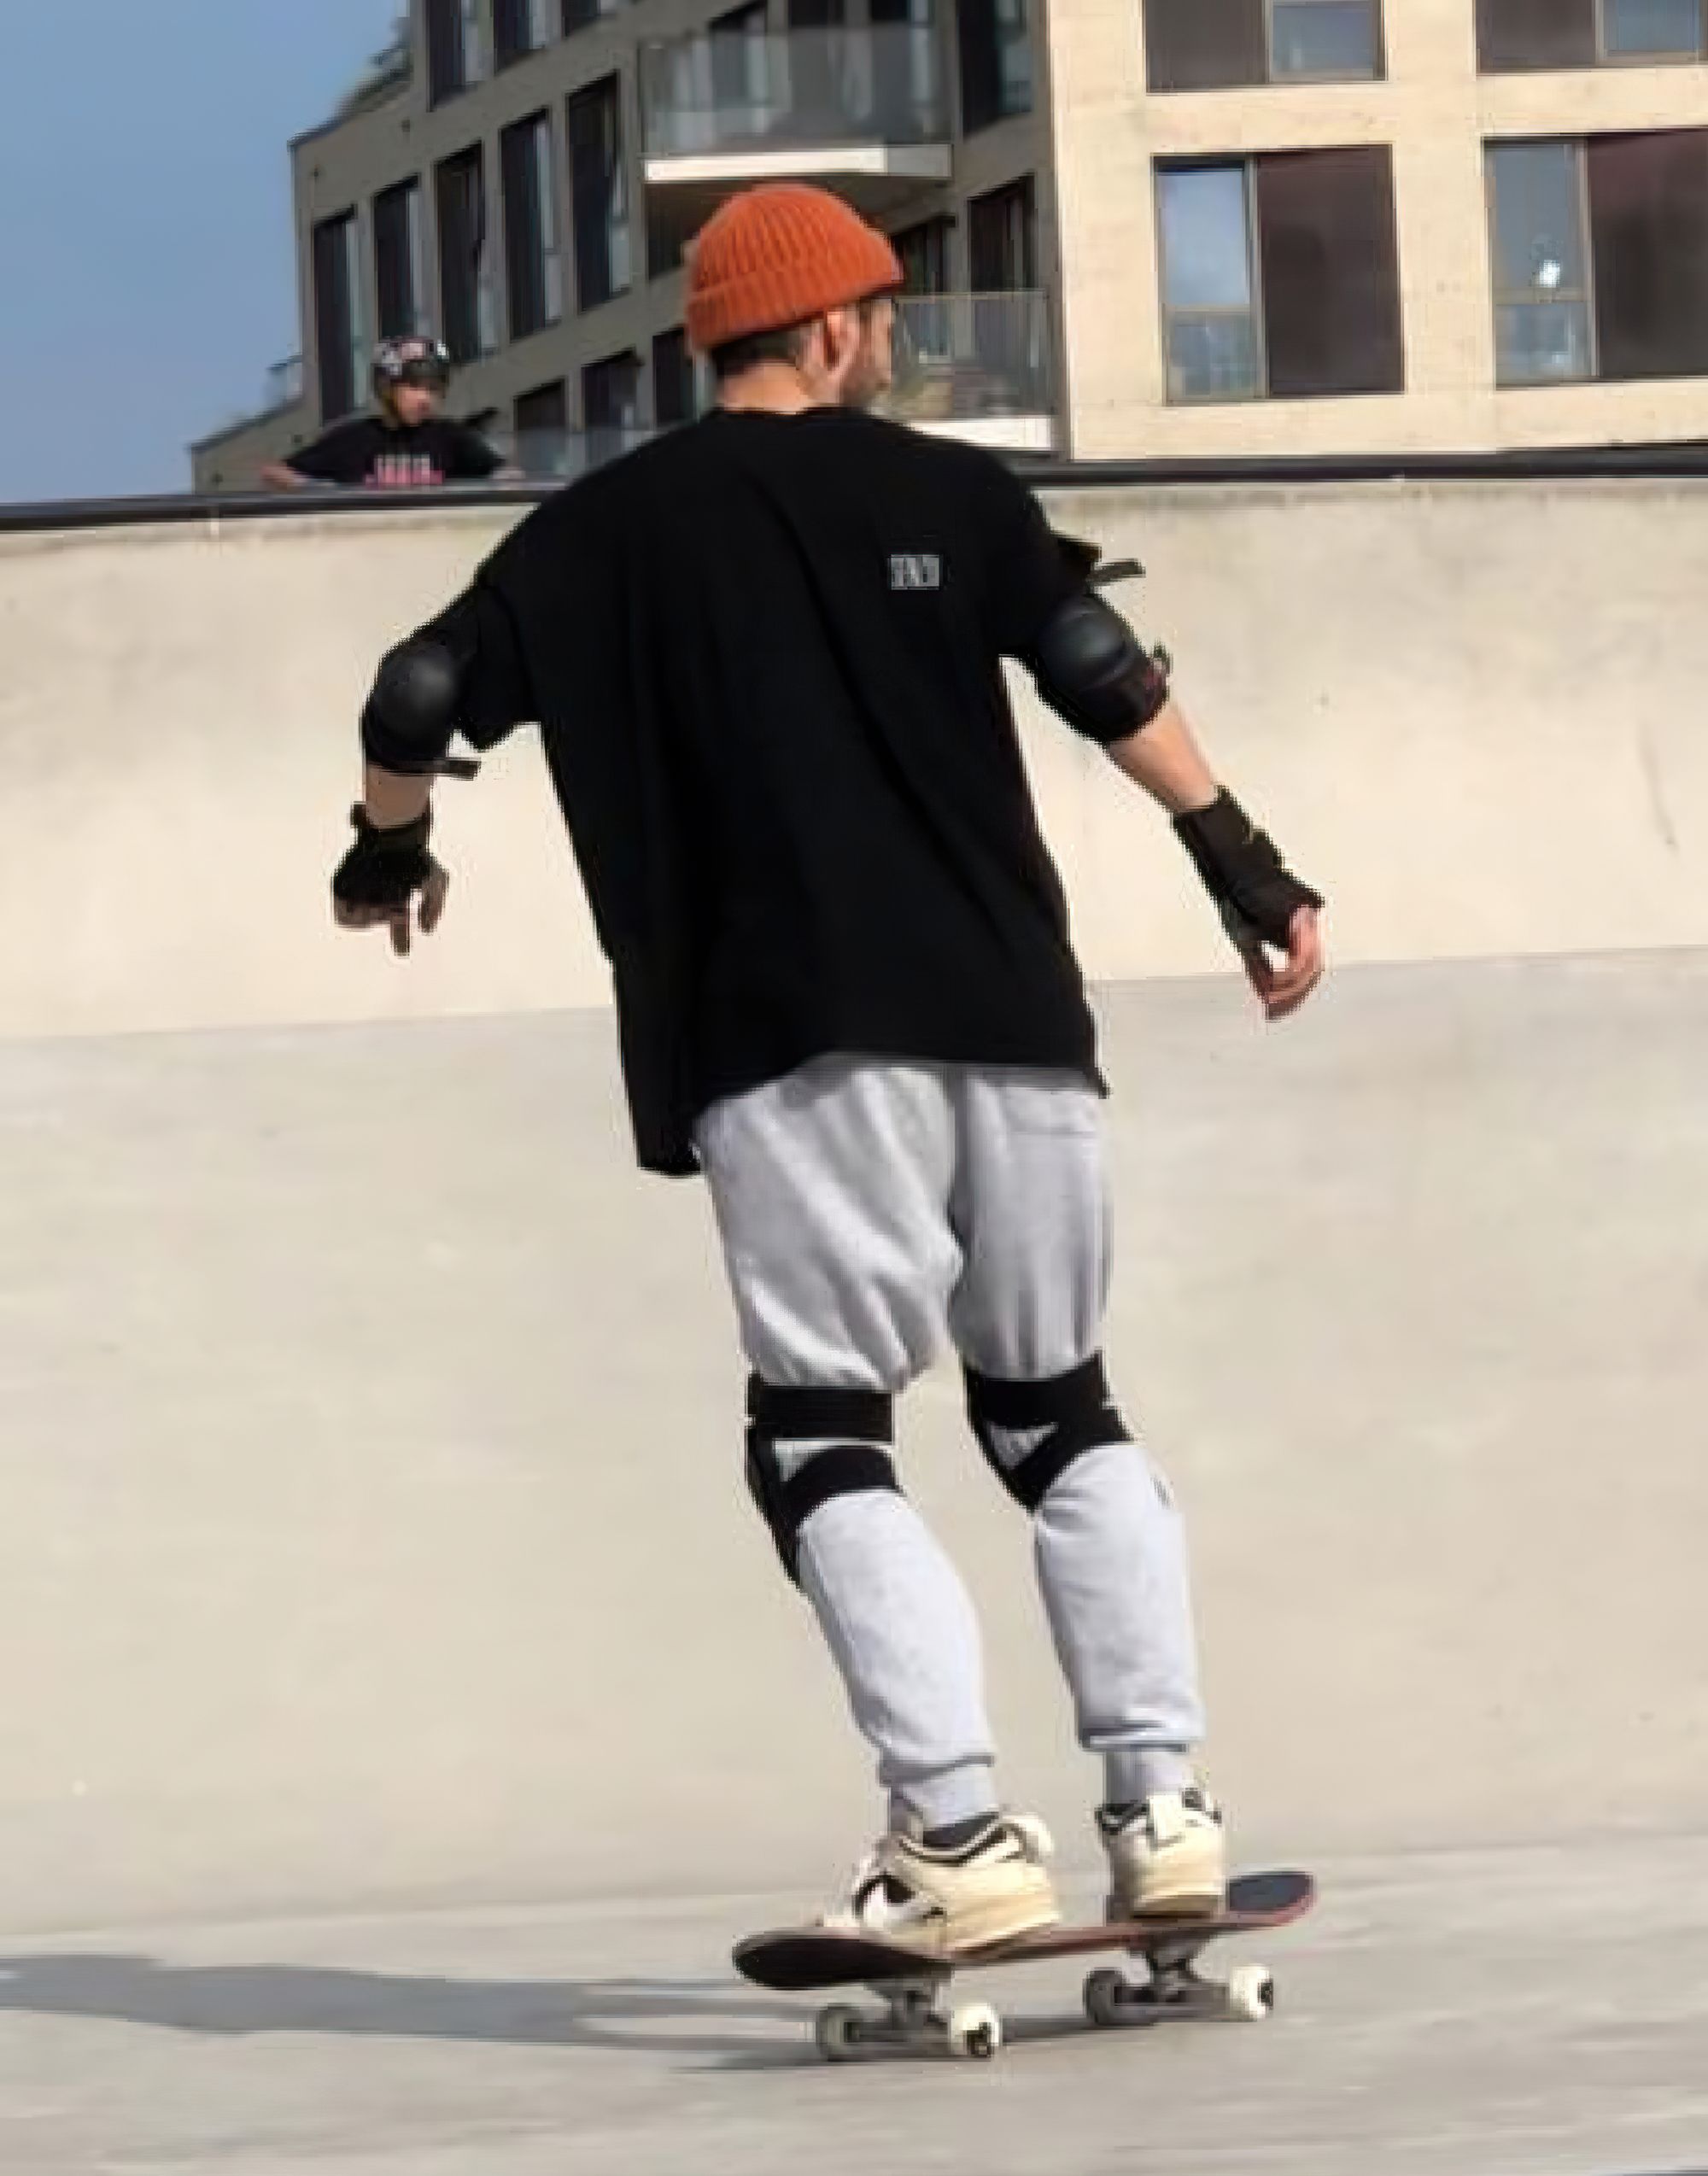 Skateboarding in Amsterdam